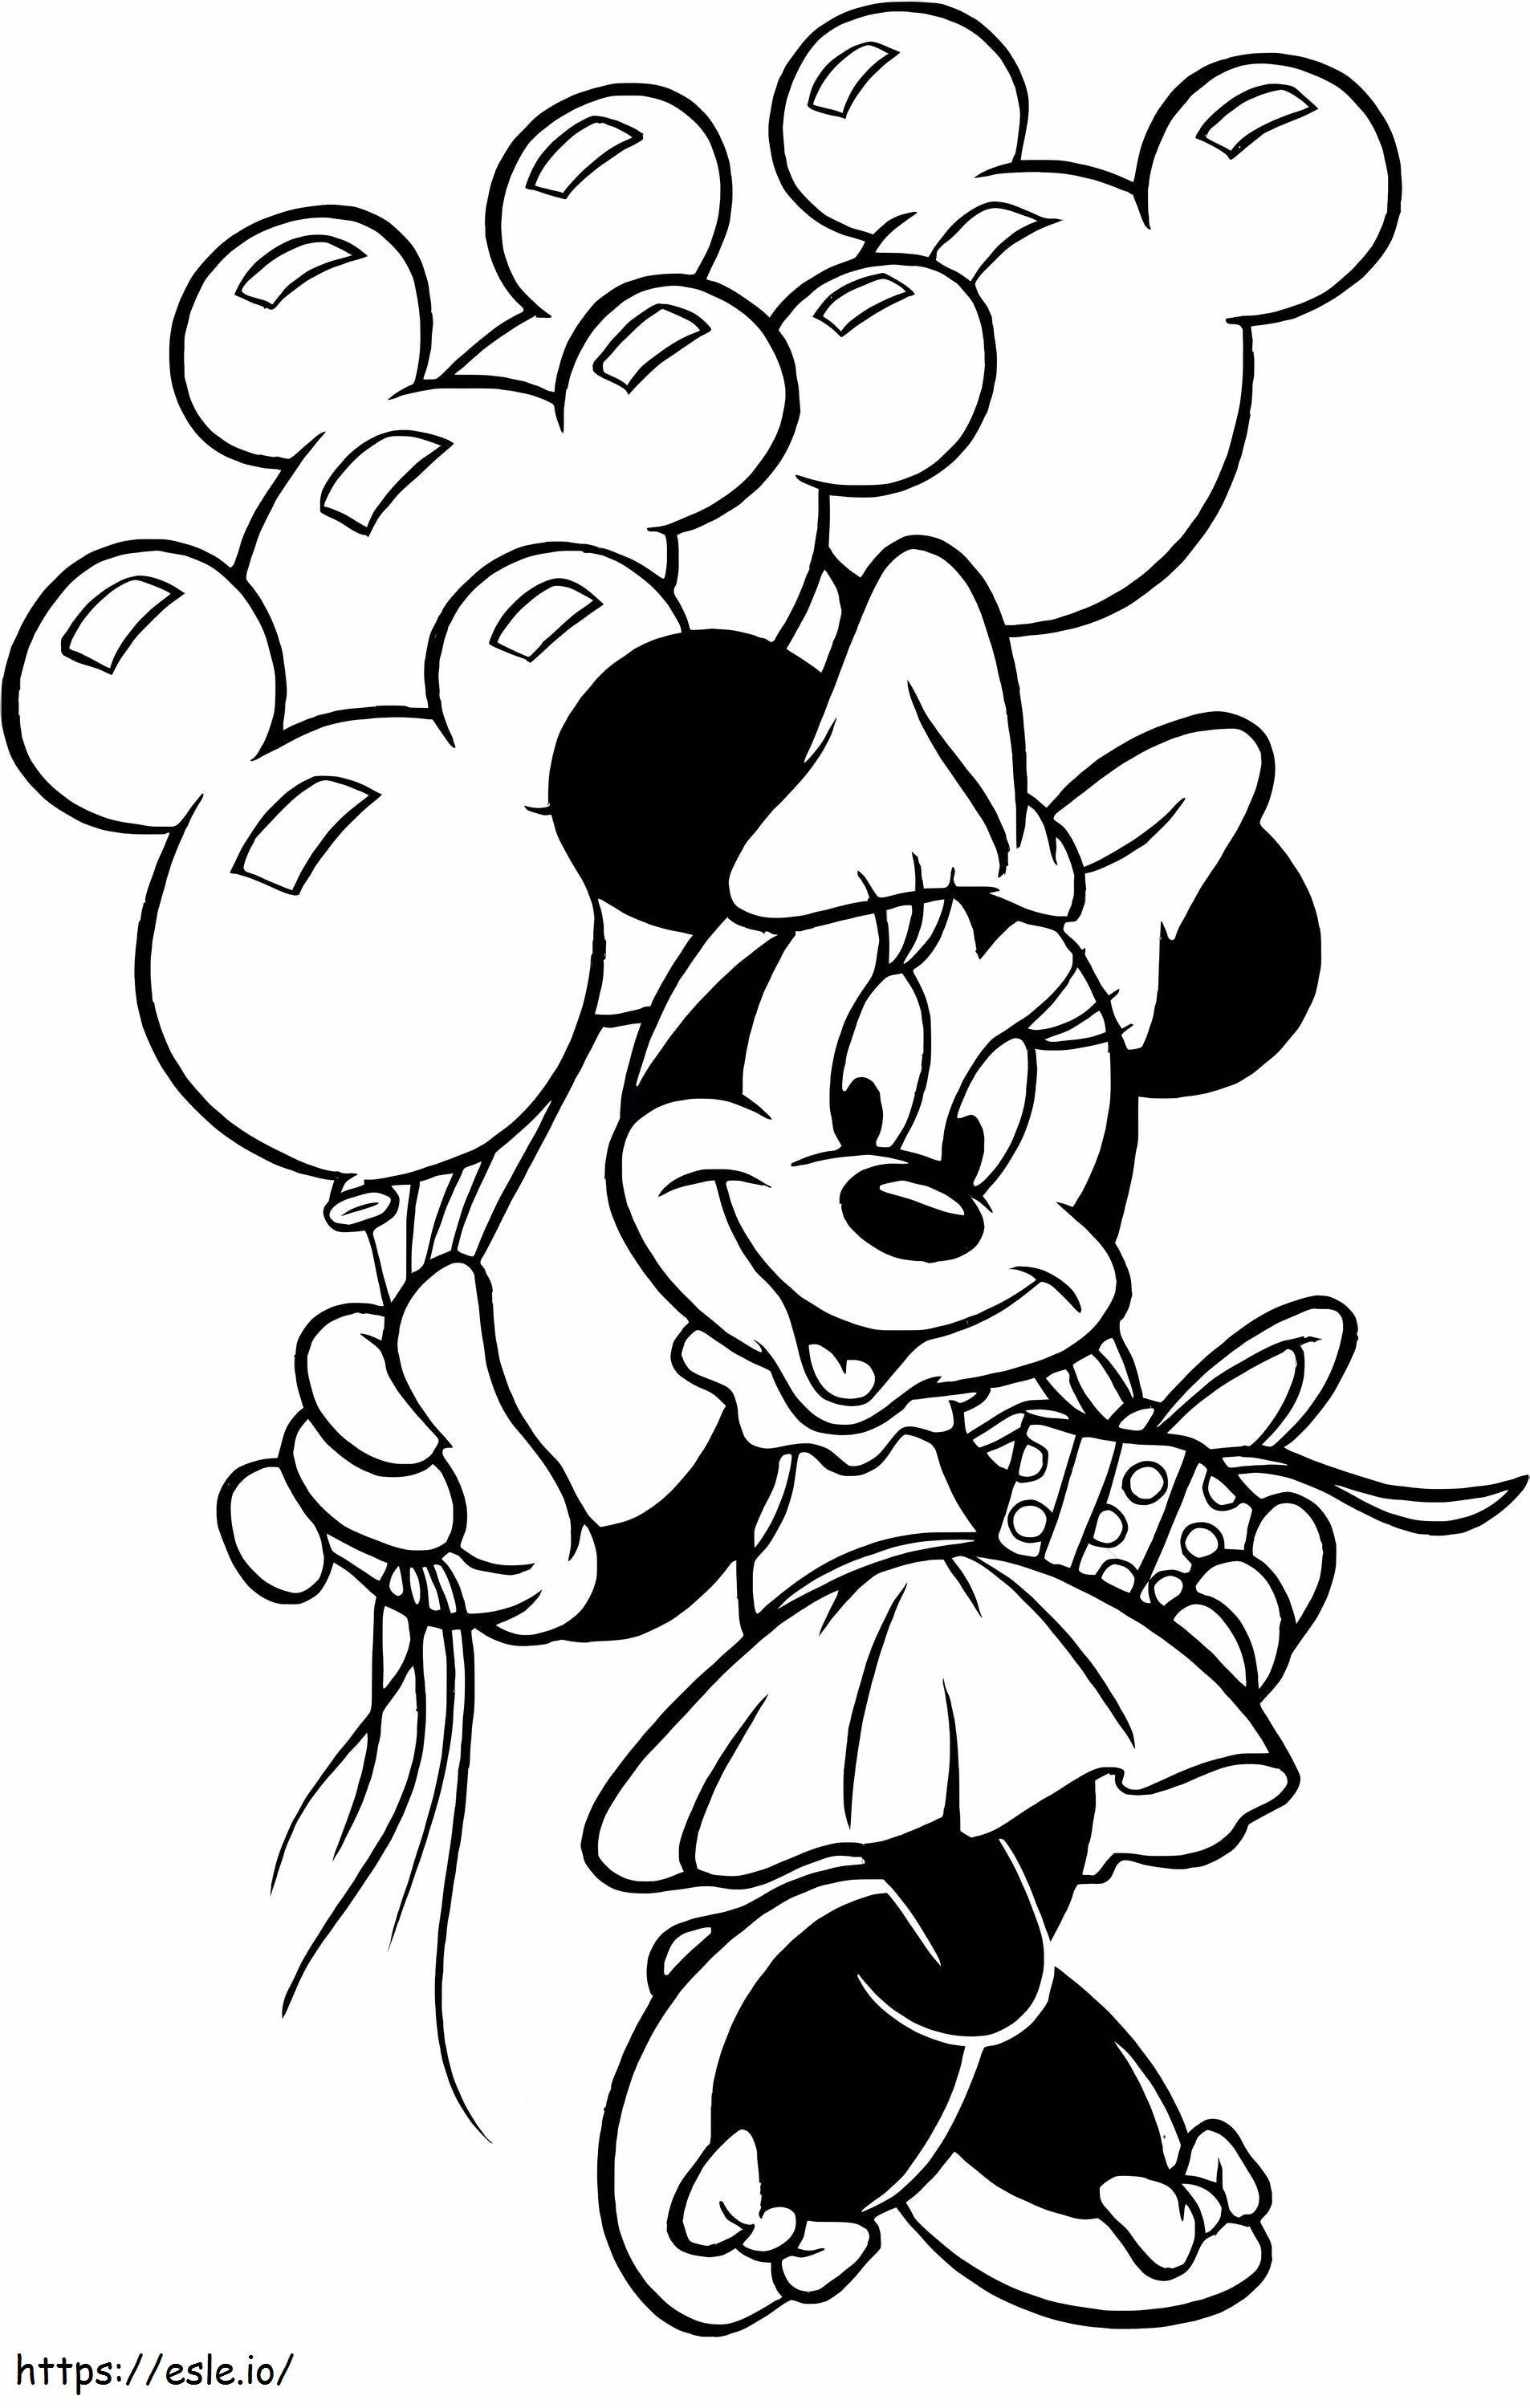 Minnie Mouse mit Geschenkbox und Luftballons zu Weihnachten ausmalbilder